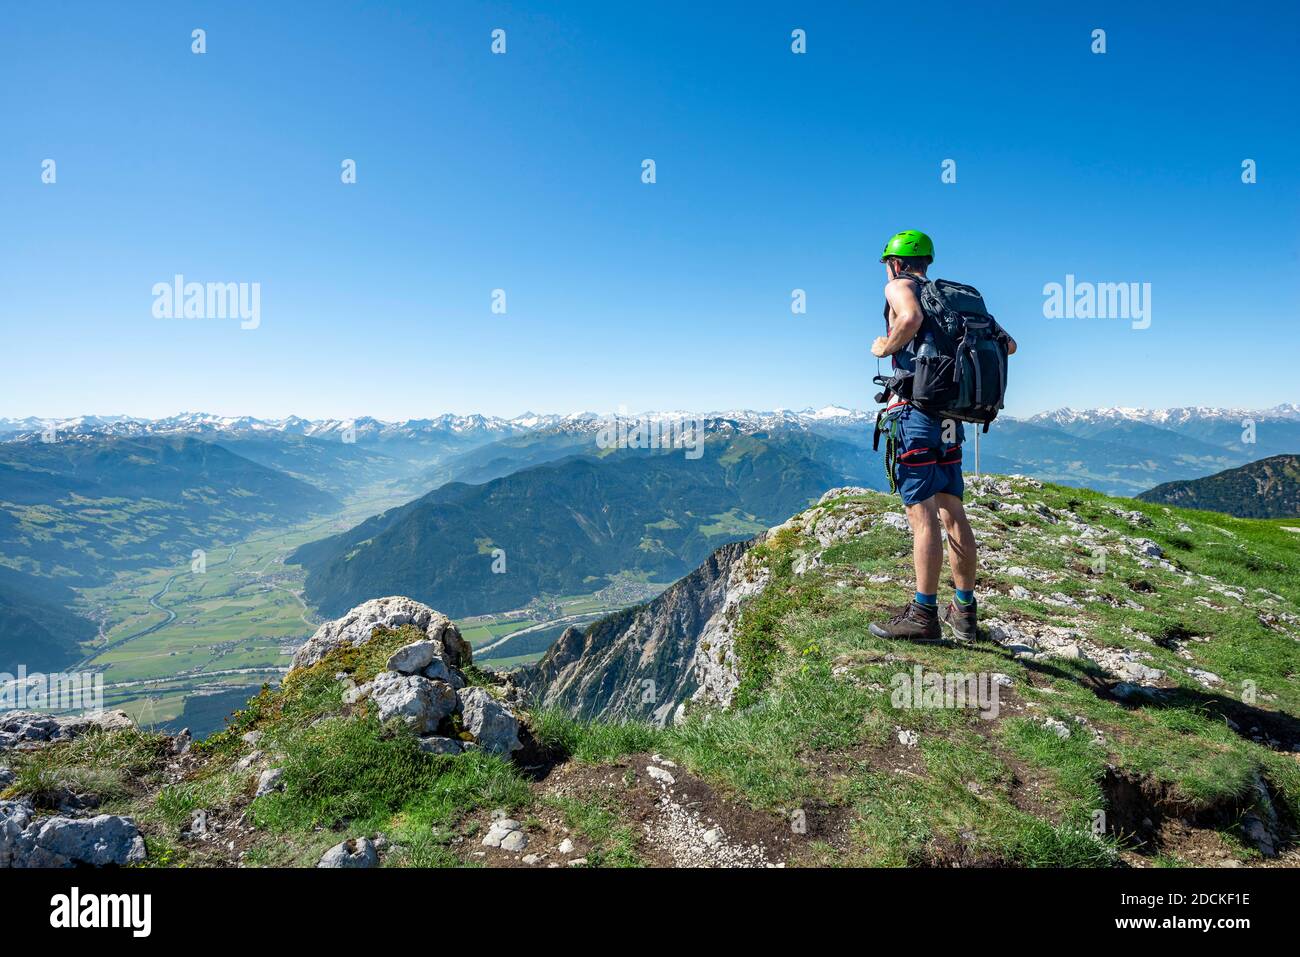 Le randonneur donne sur la vallée de l'auberge, le pic de Haidachstellwand, 5 sommets via ferrata, randonnée dans les montagnes de Rofan, Tyrol, Autriche Banque D'Images